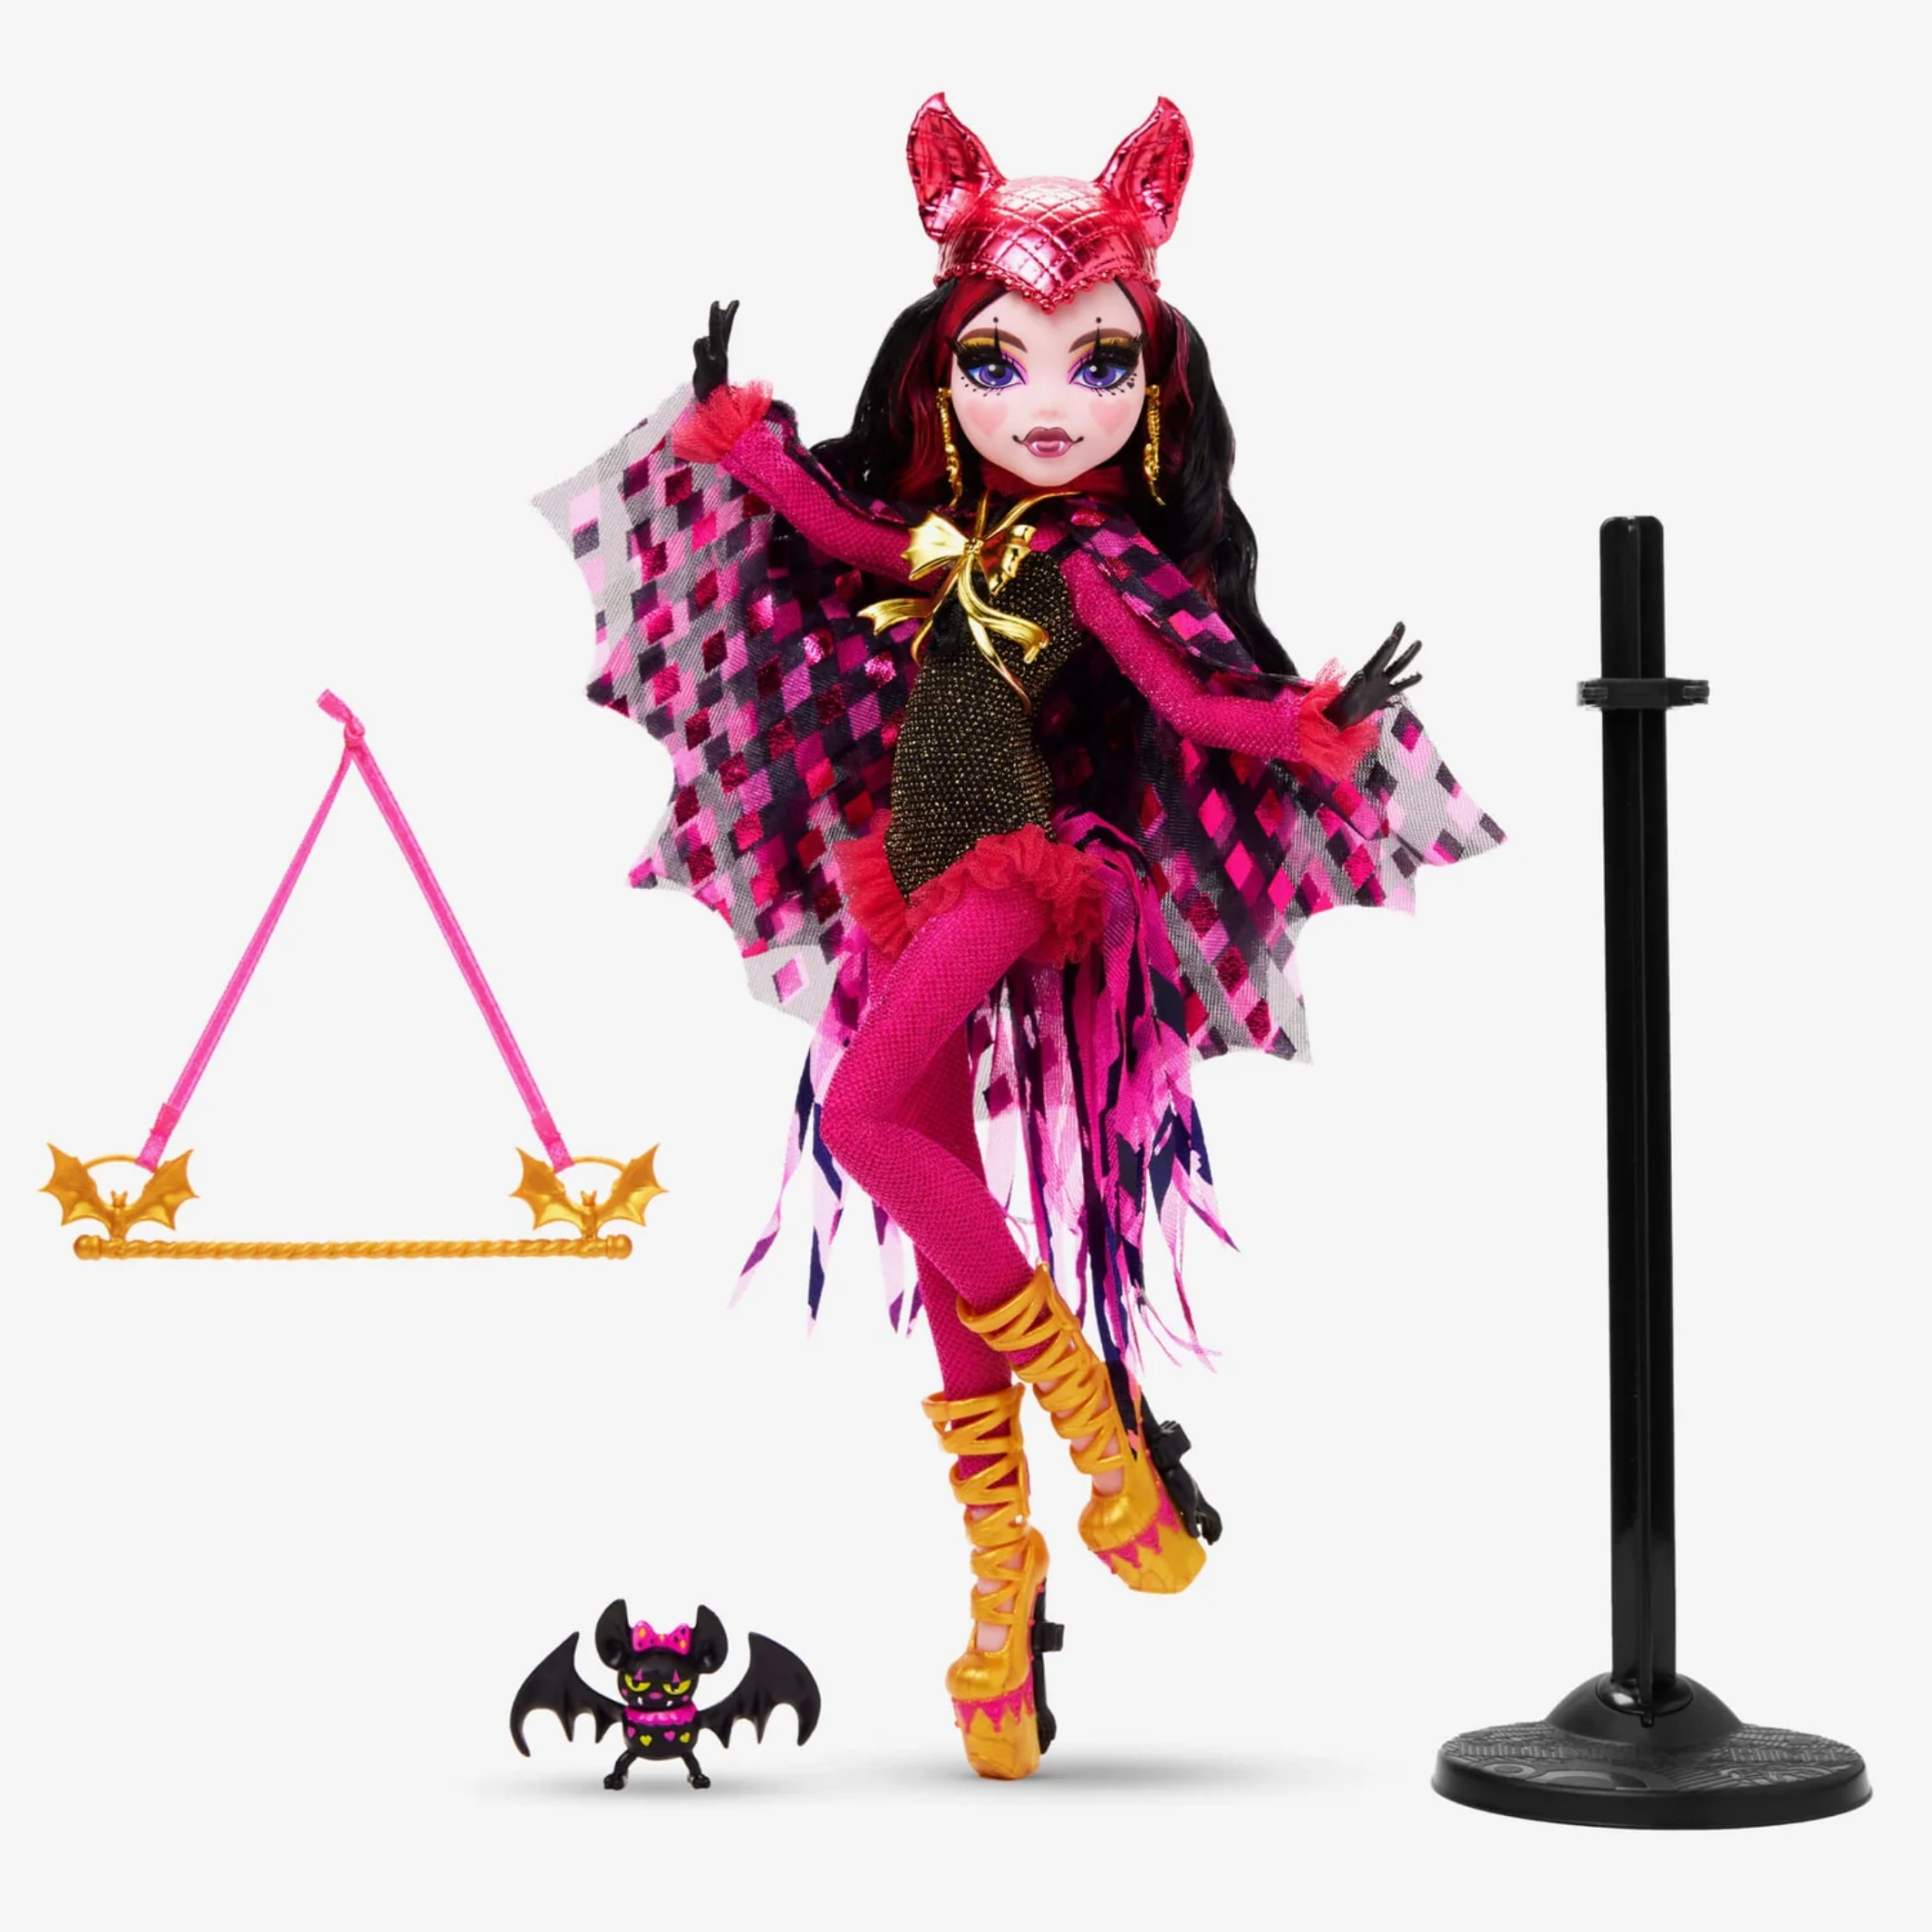 Monster high Draculaura Doll